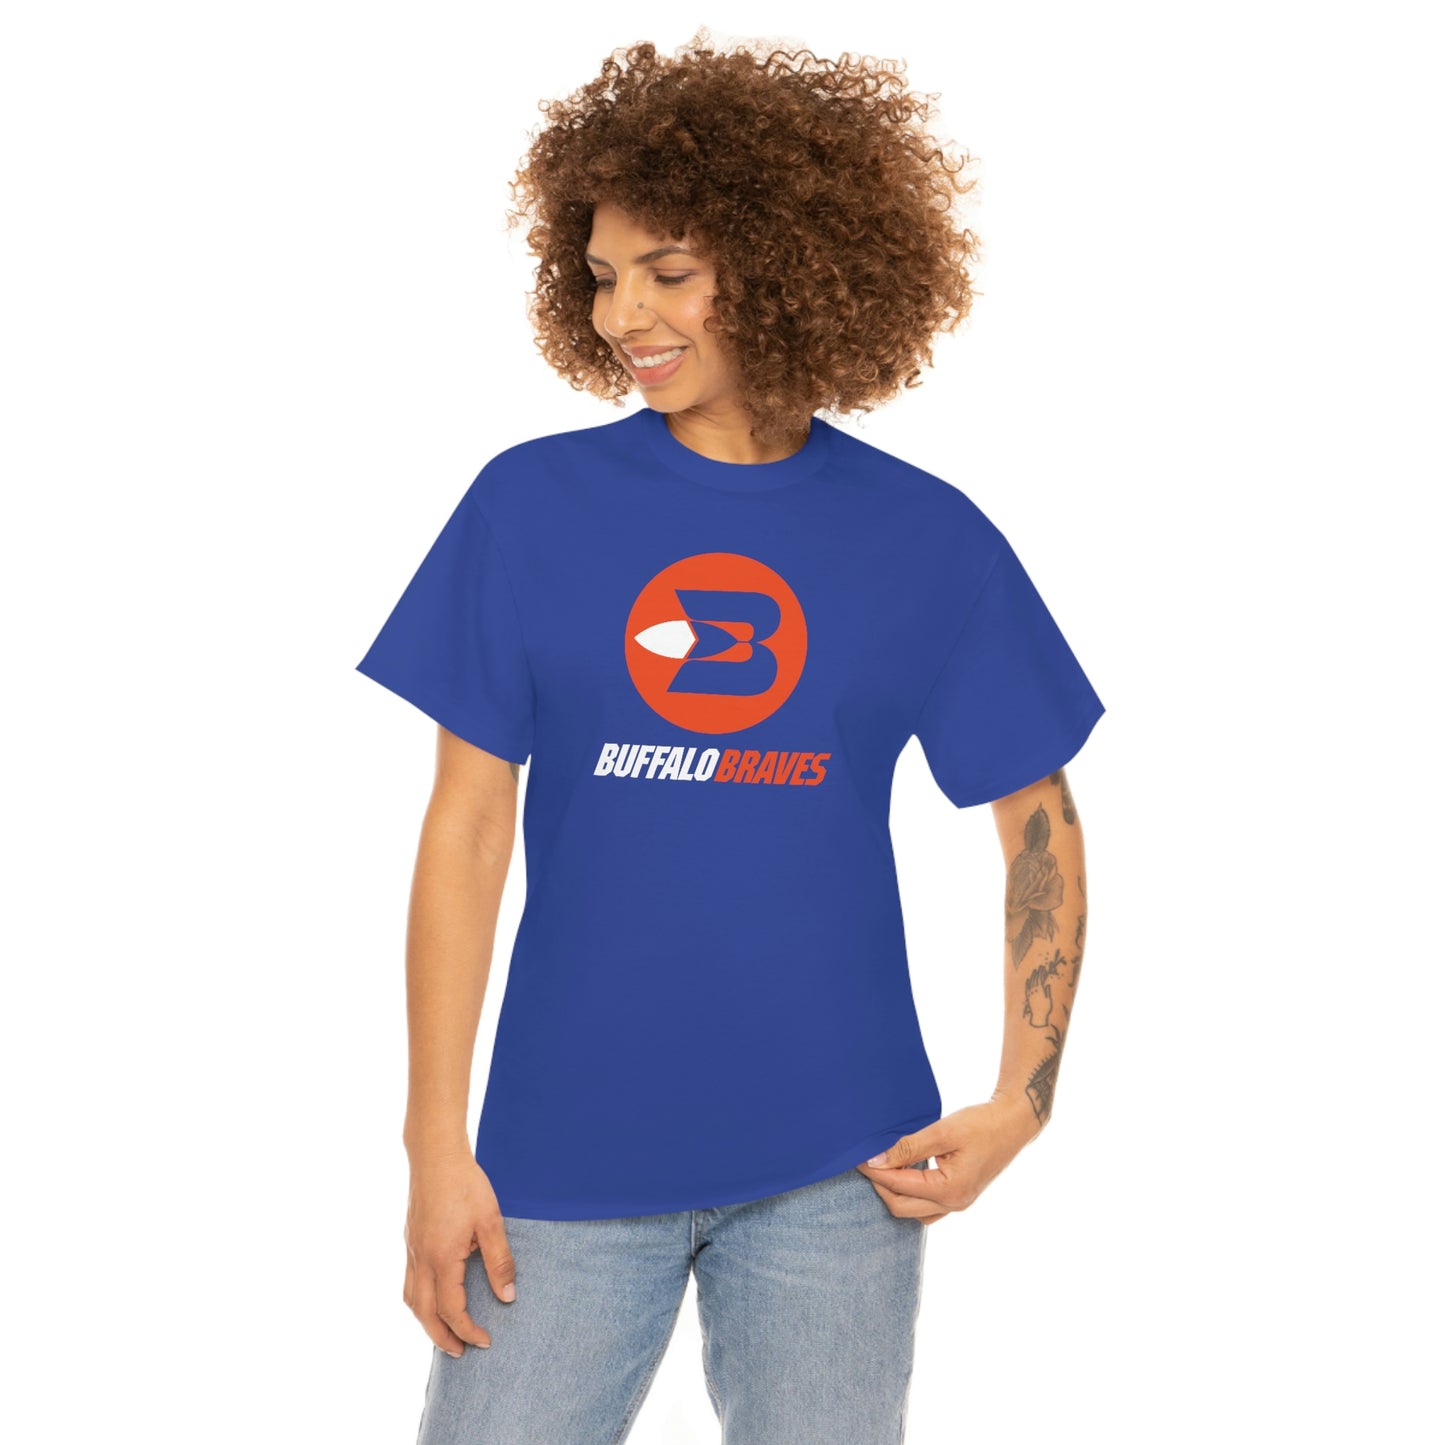 Buffalo Braves T-Shirt